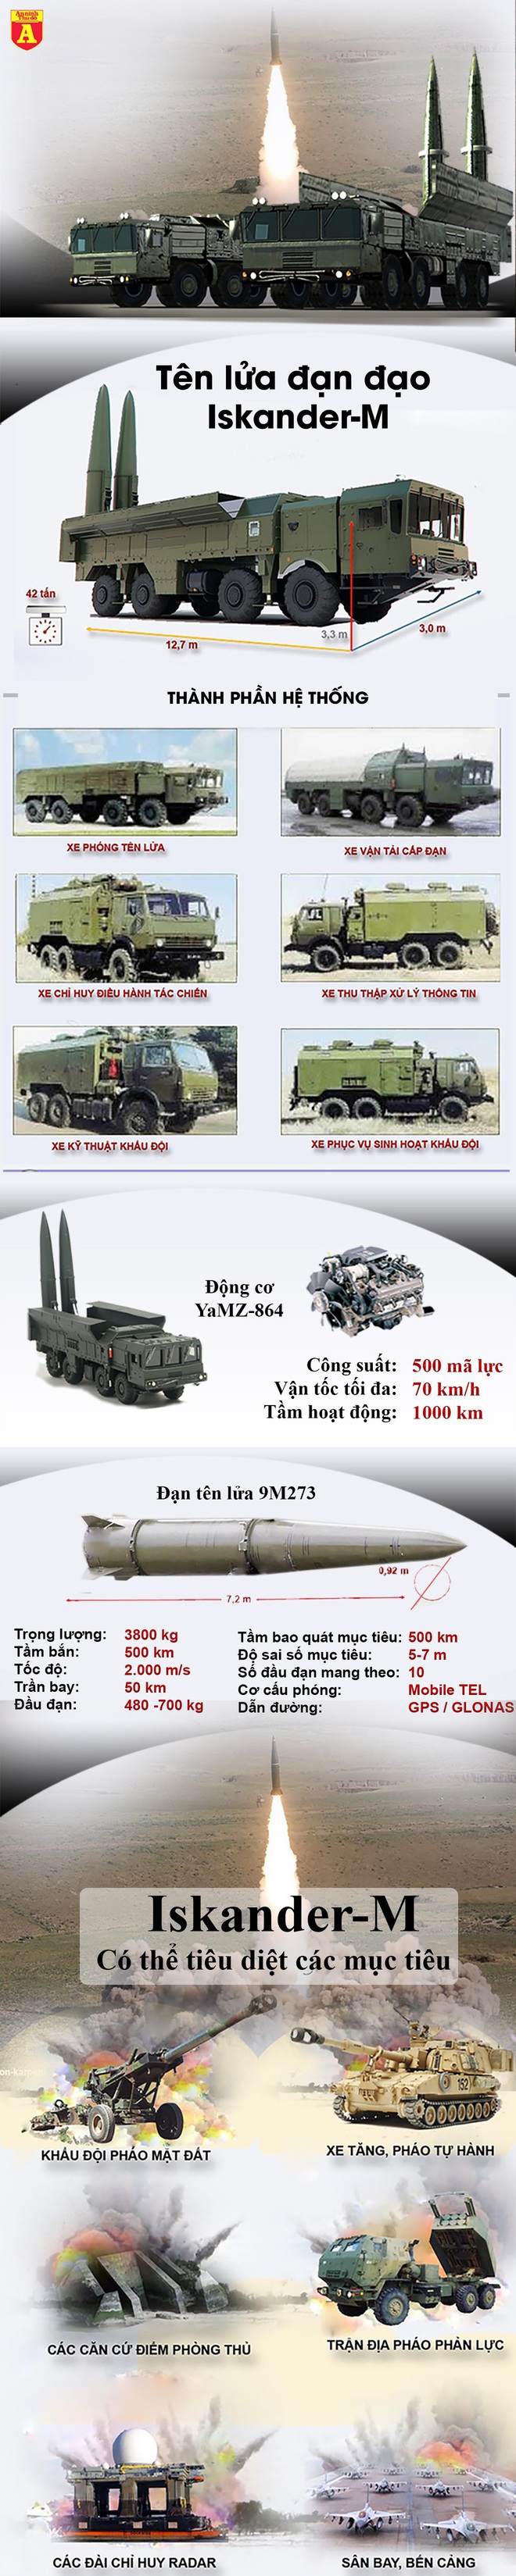 Nga sẽ dùng siêu tên lửa Iskander-M đáp trả quân Thổ Nhĩ Kỳ? - Ảnh 3.